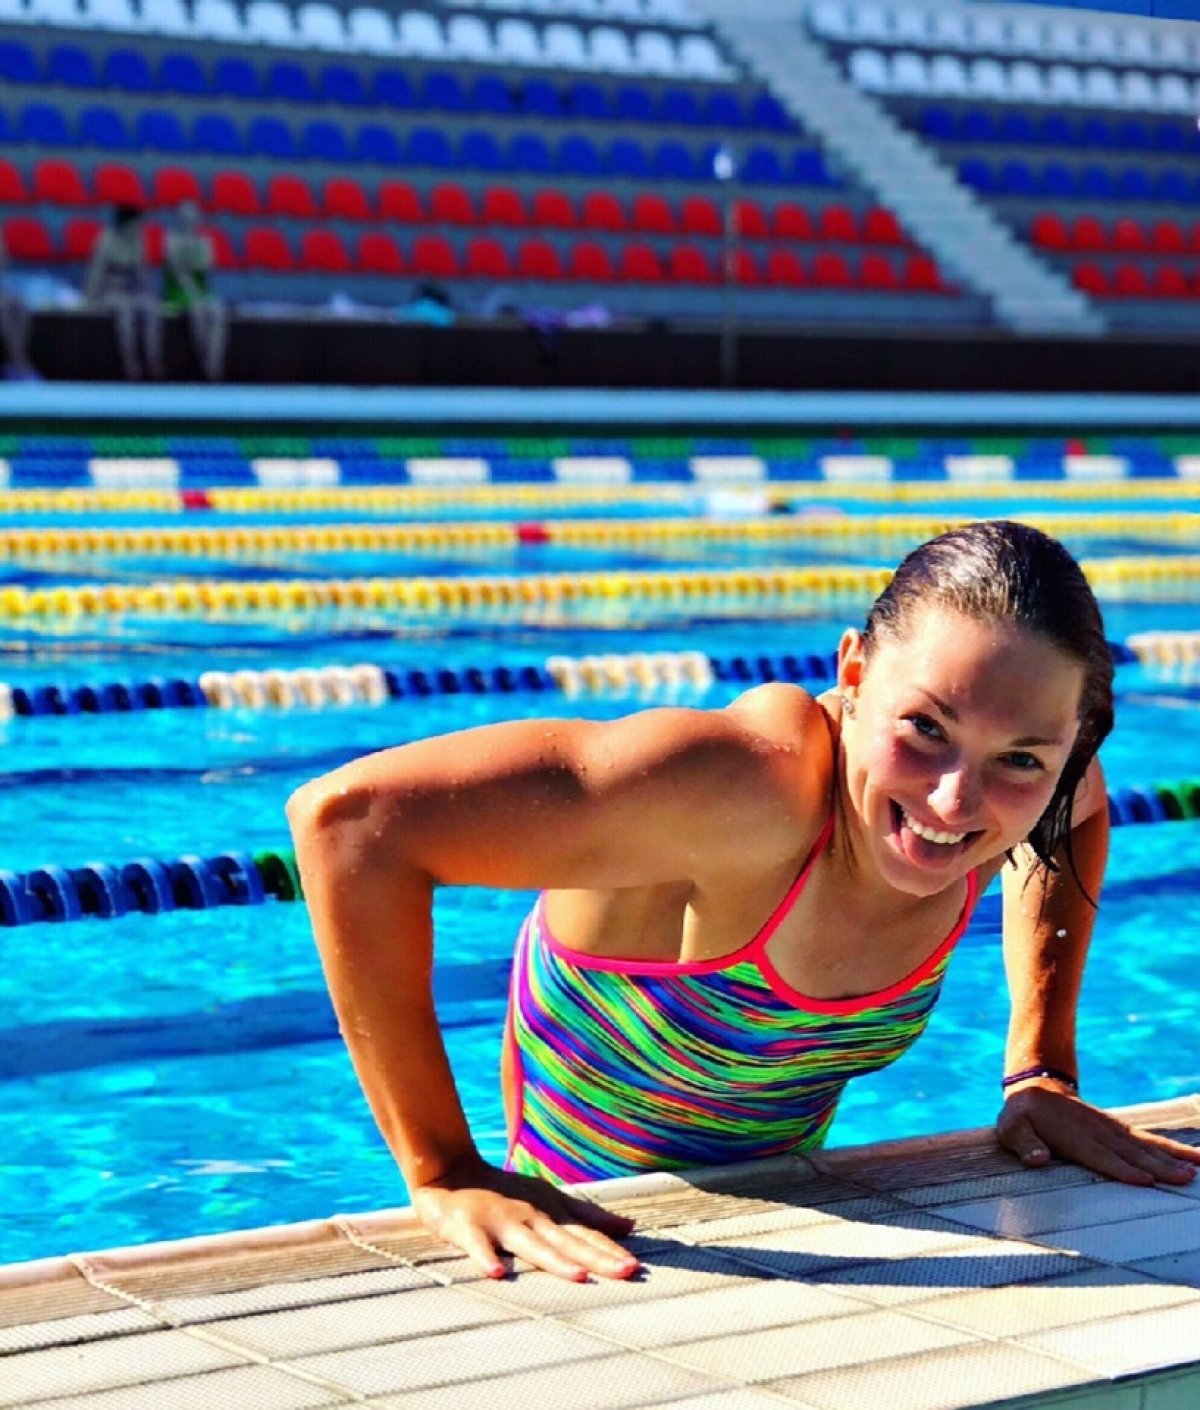 Баклакова Мария студентка ЧГИФК, будет представлять Пермский край в составе сборной команды России по плаванию в Универсиаде-2019